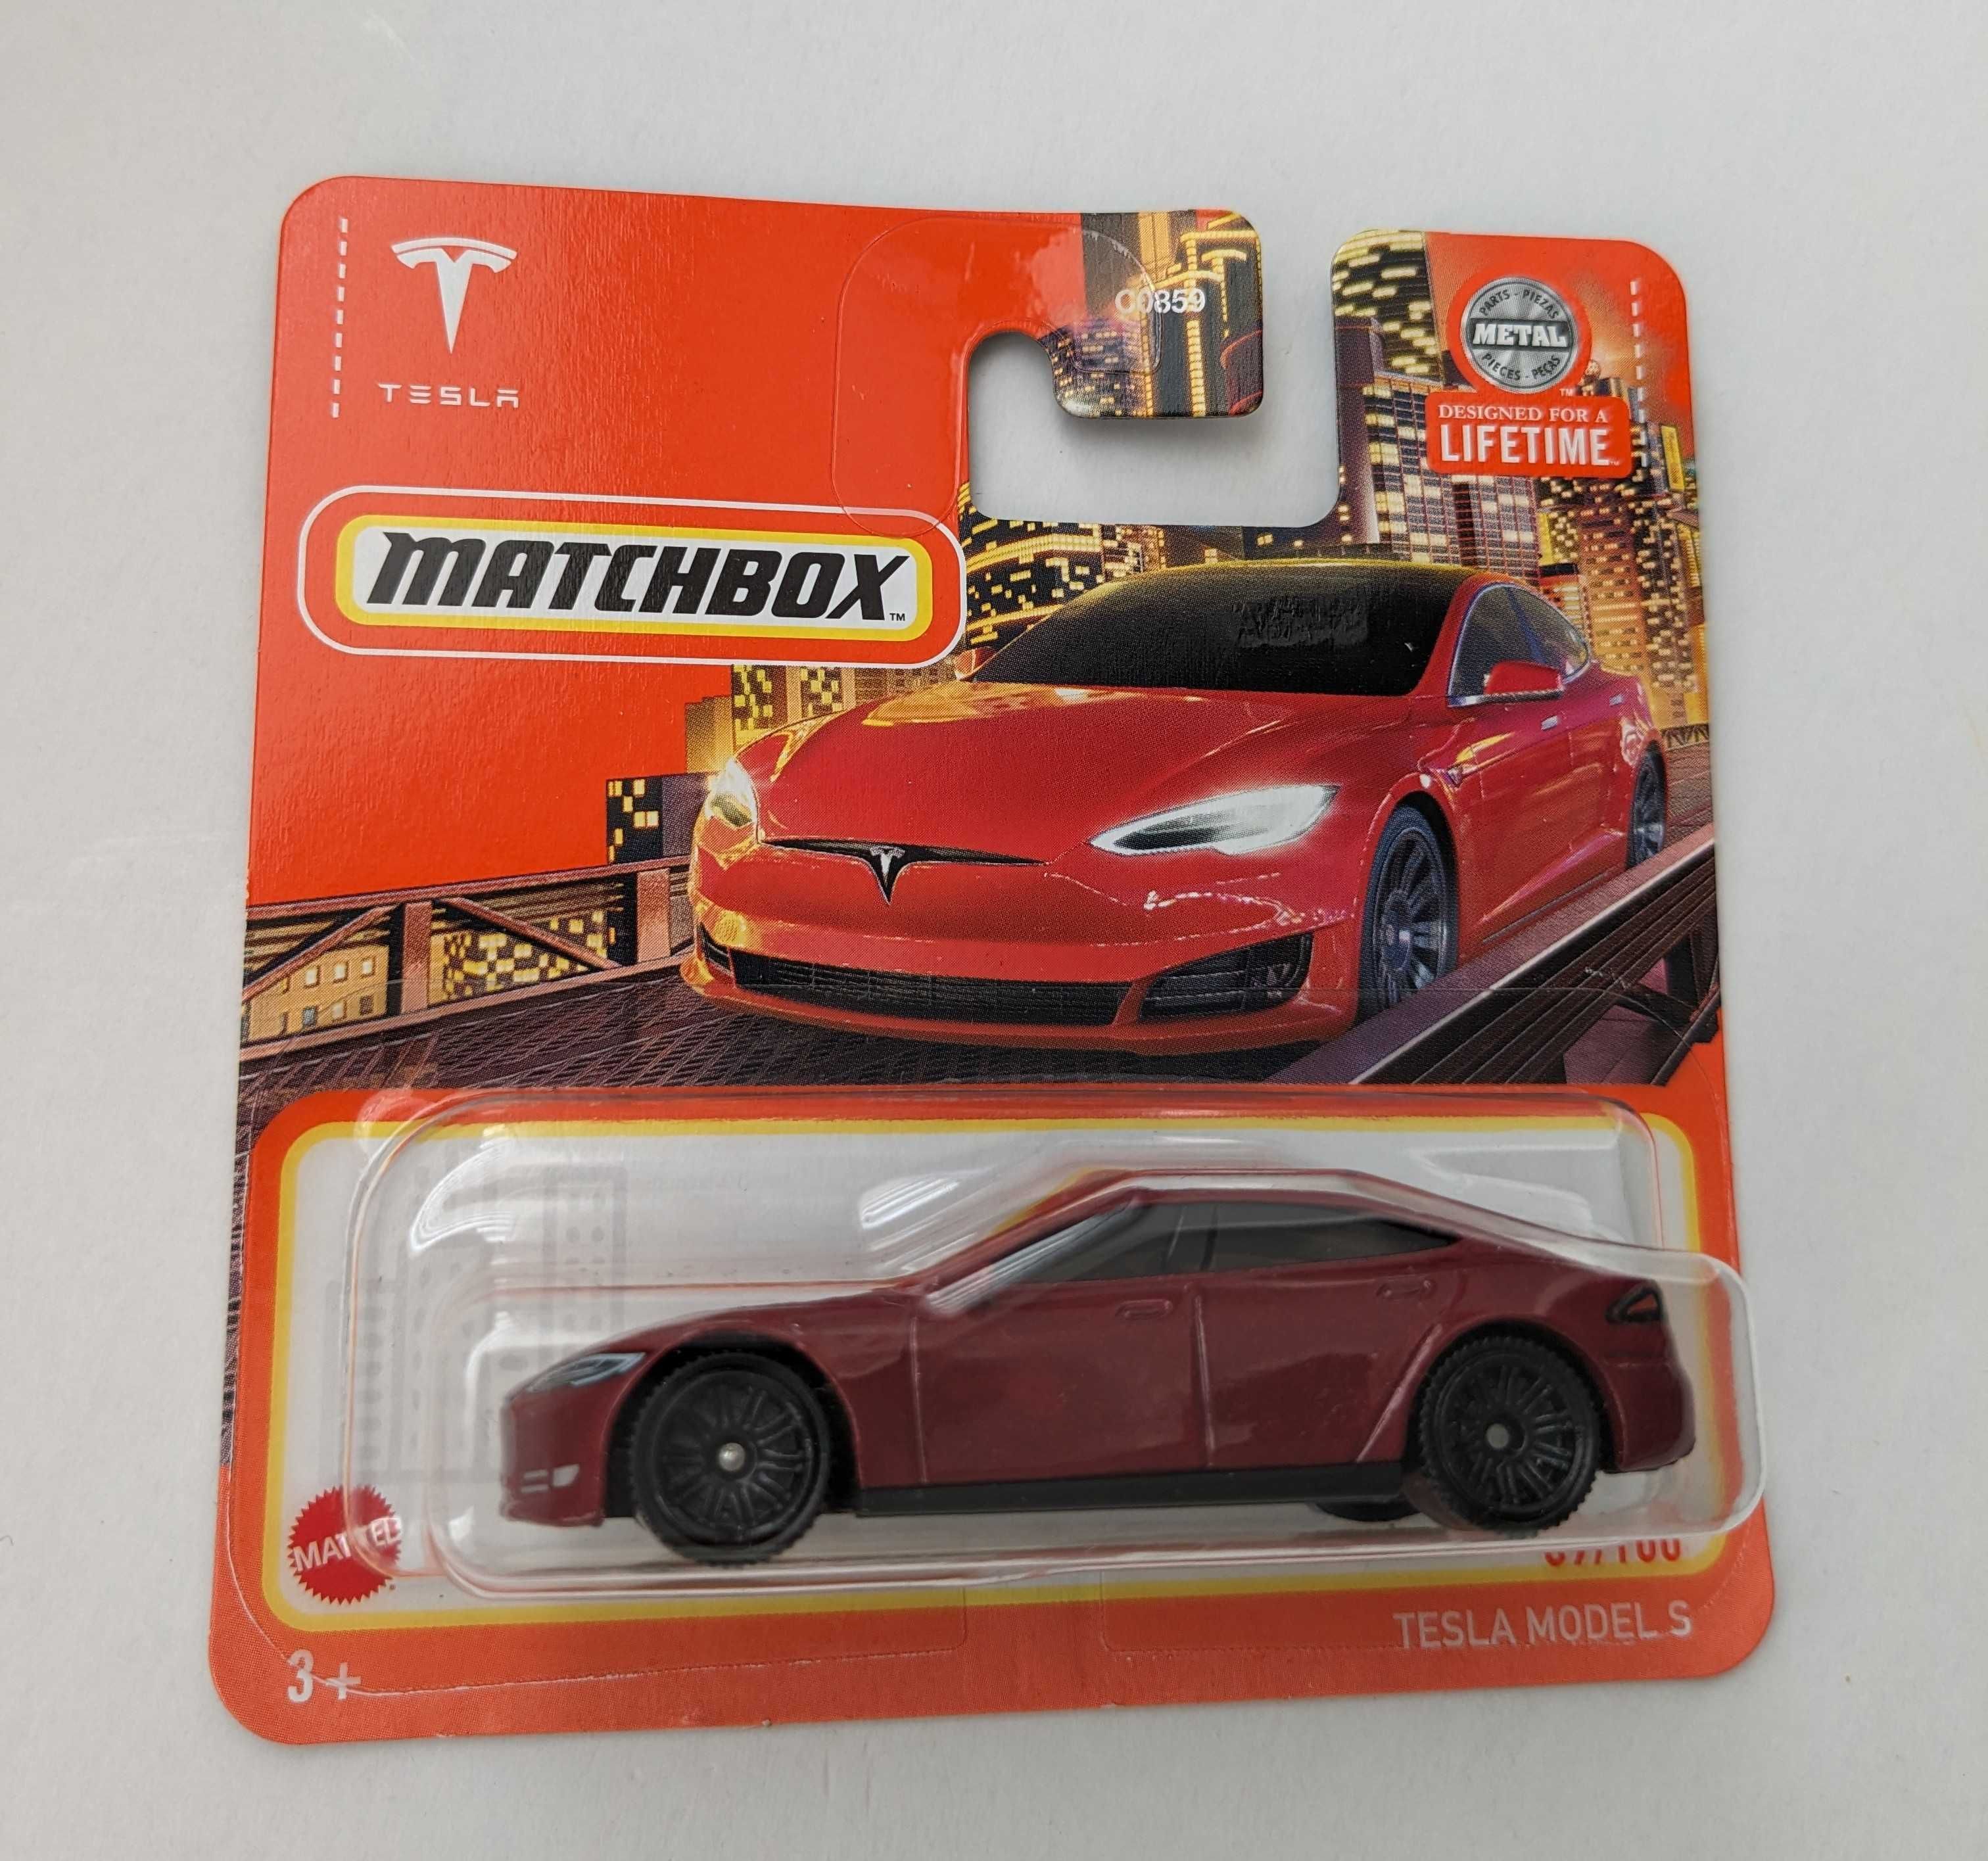 Tesla Model S Matchbox, 3 sztuki